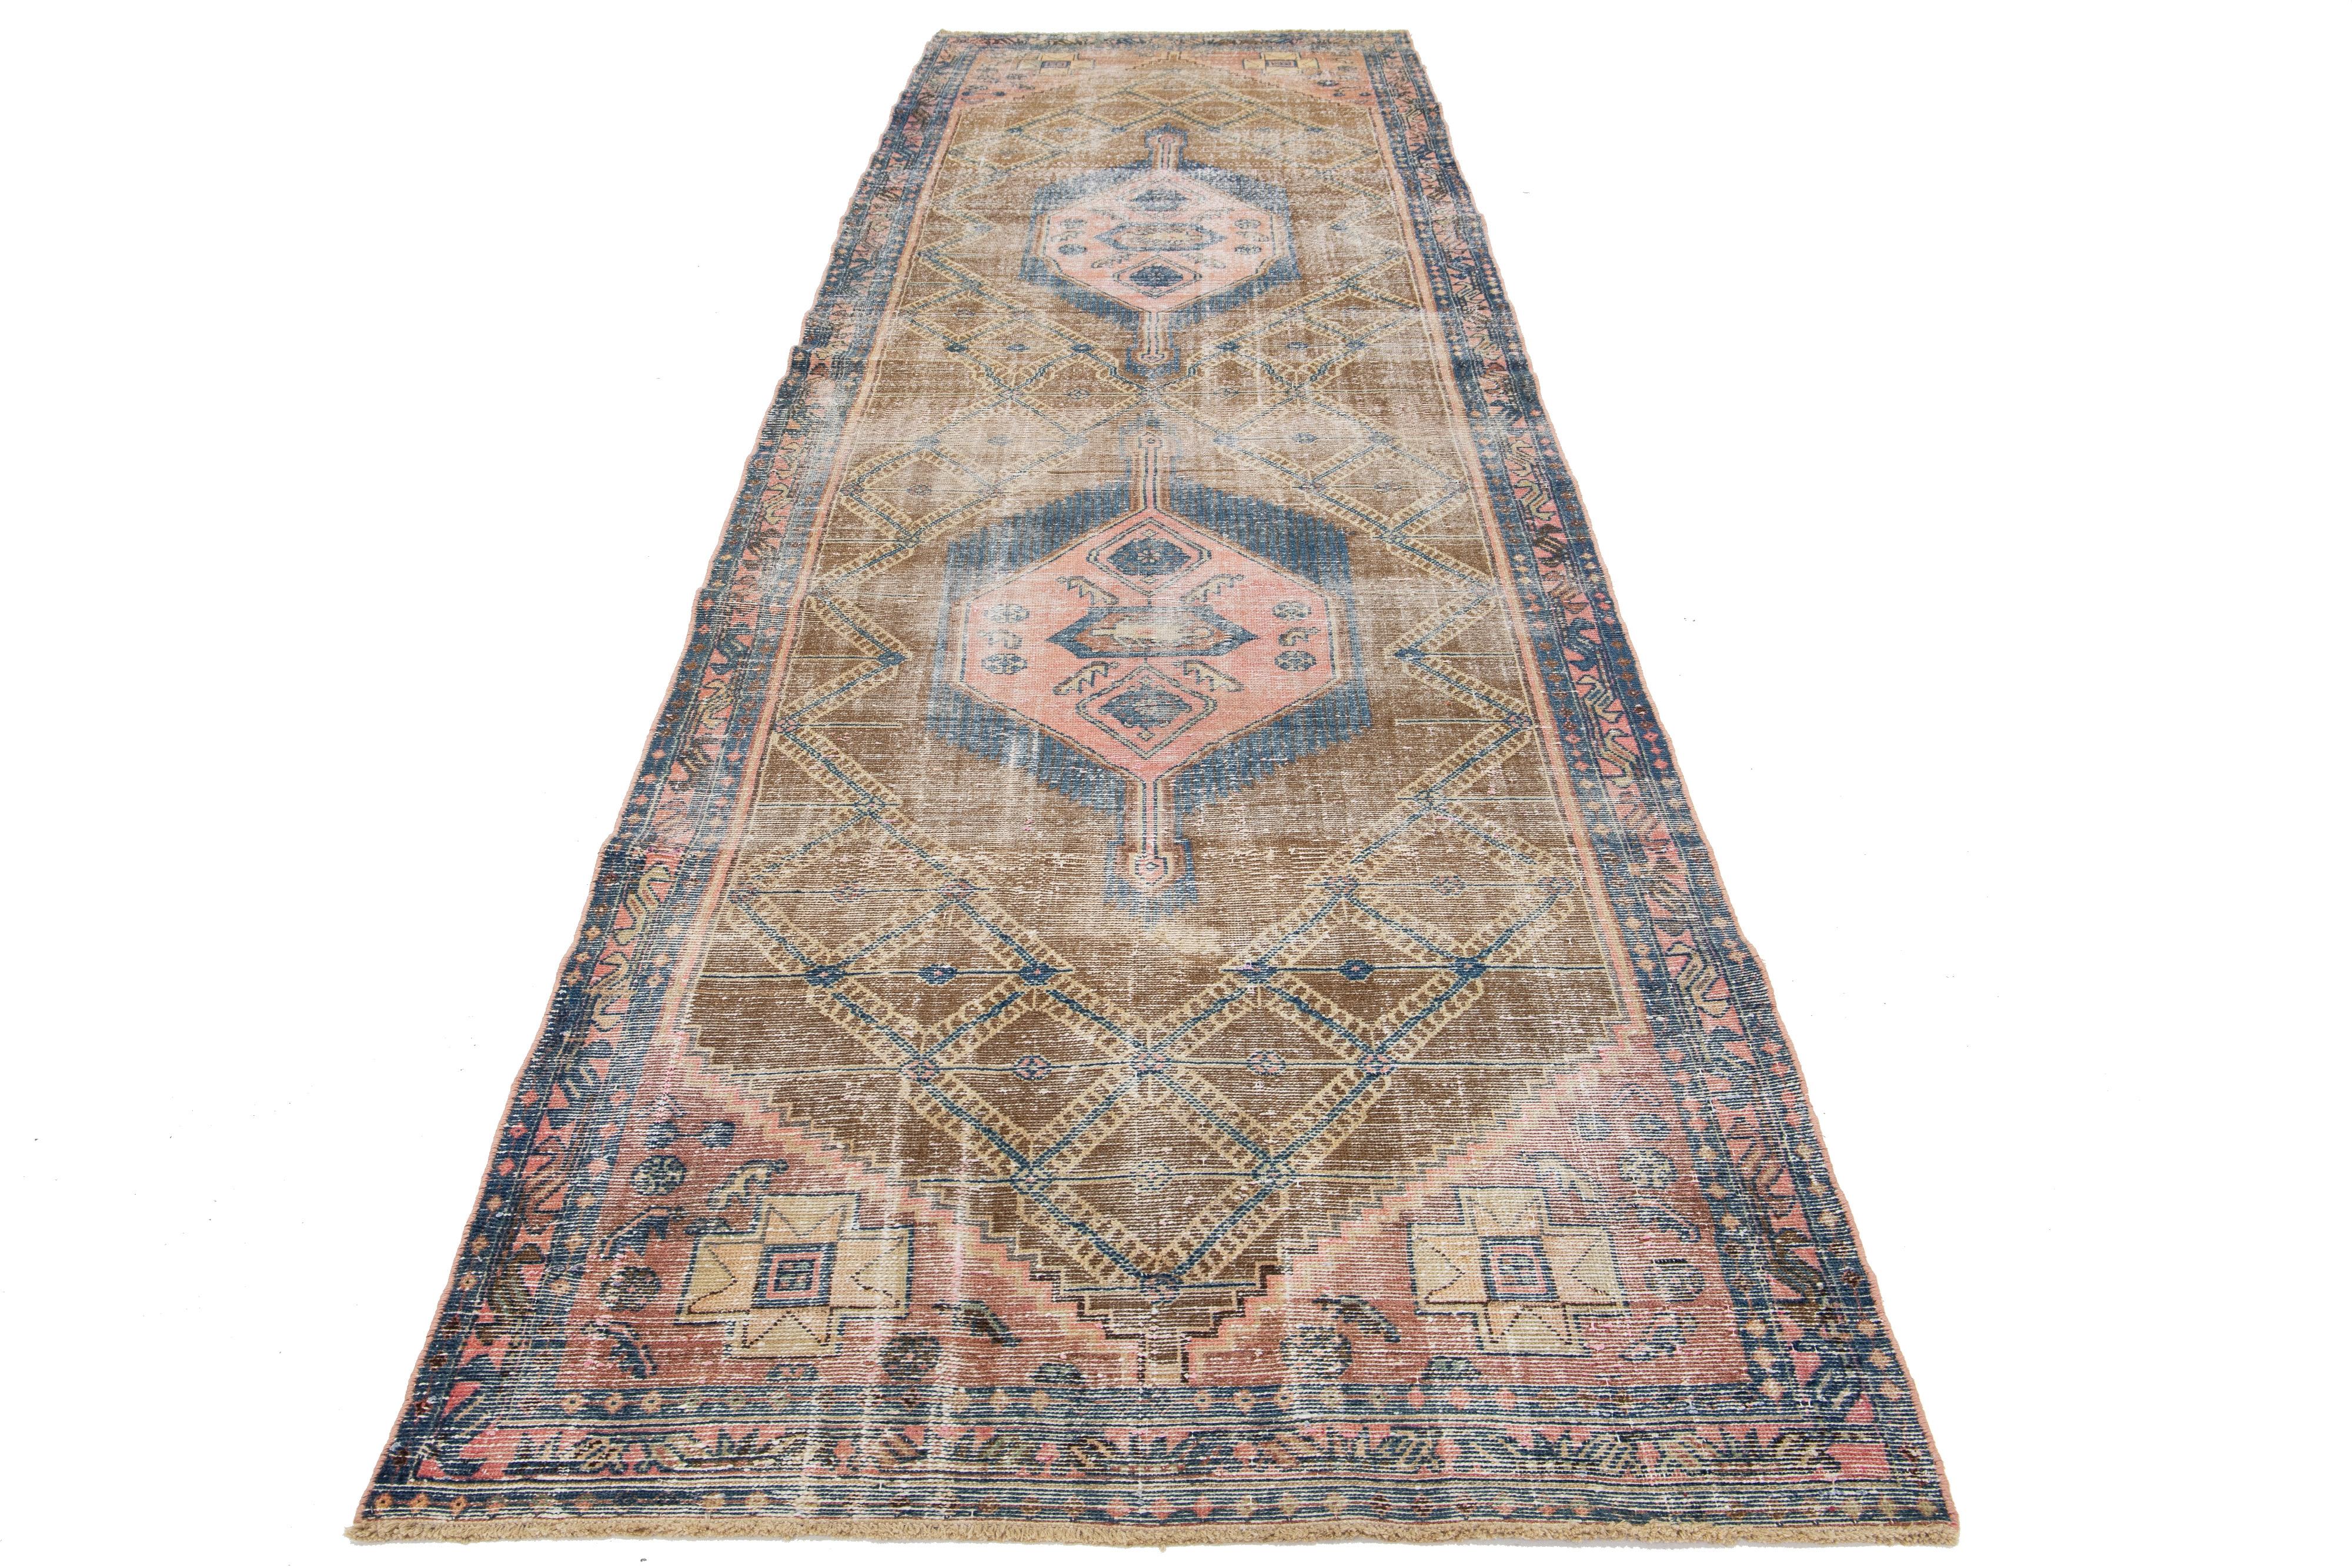 Dieser Läufer aus Vintage-Wolle zeigt ein braunes Feld mit pfirsichfarbenen und blauen Stammesakzenten persischen Ursprungs.

Dieser Teppich misst 4'2